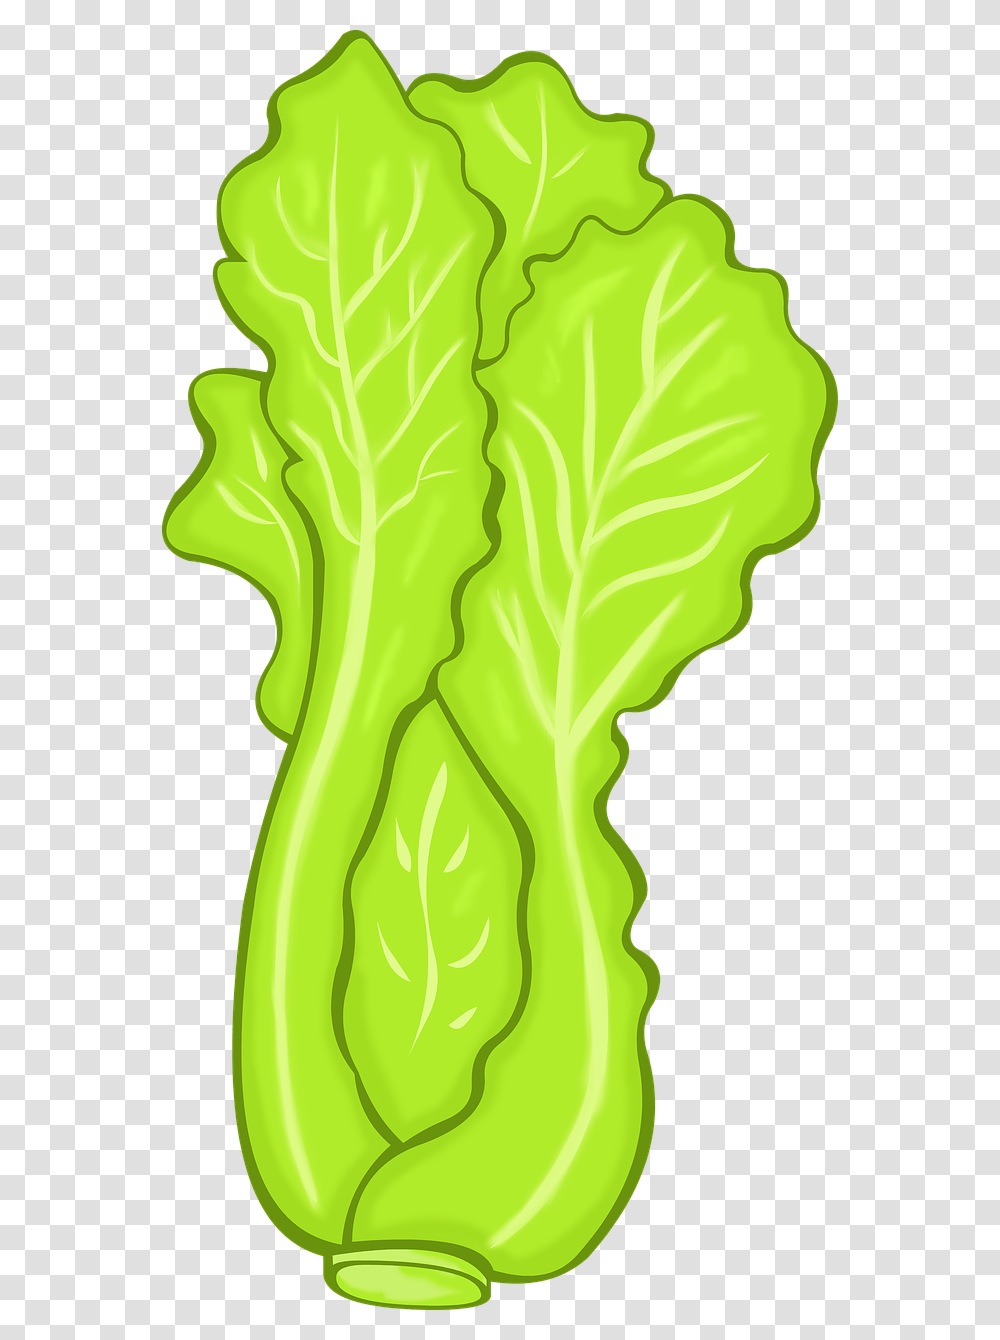 Plant, Vegetable, Food, Kale Transparent Png